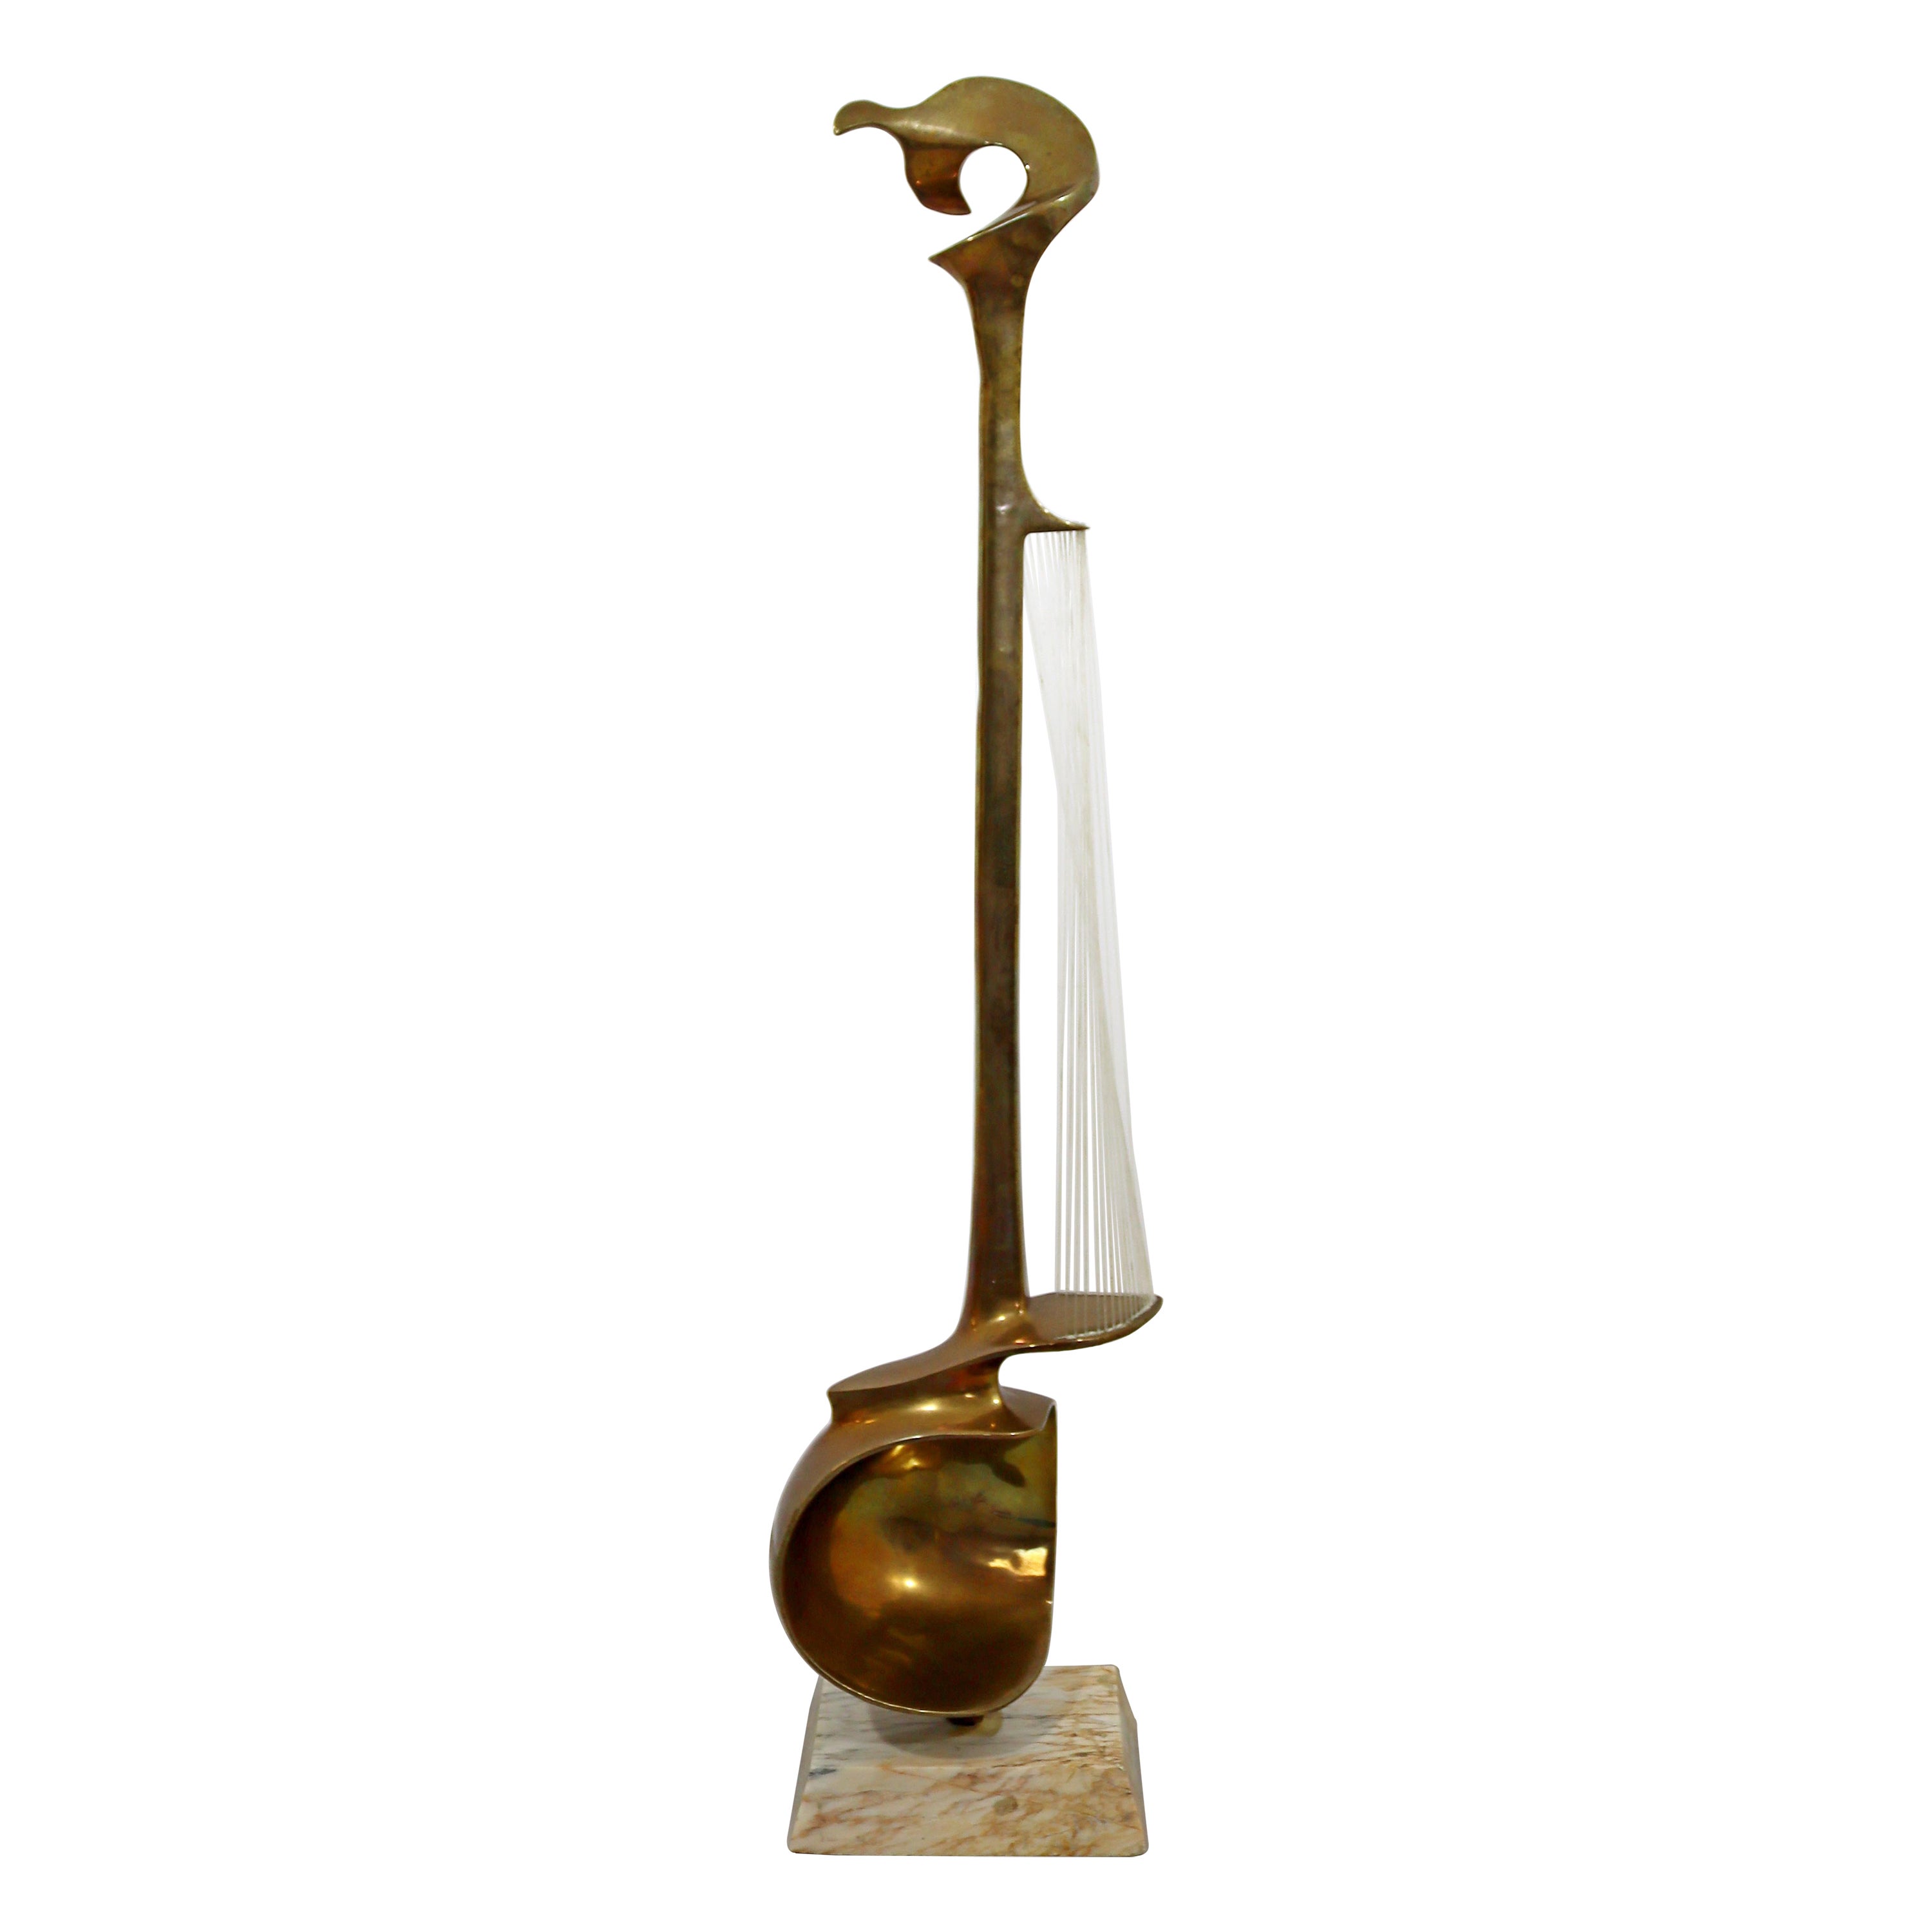 Hattakitkosol Somchai Modernist Bronze Marble String Instrument Floor Sculpture For Sale